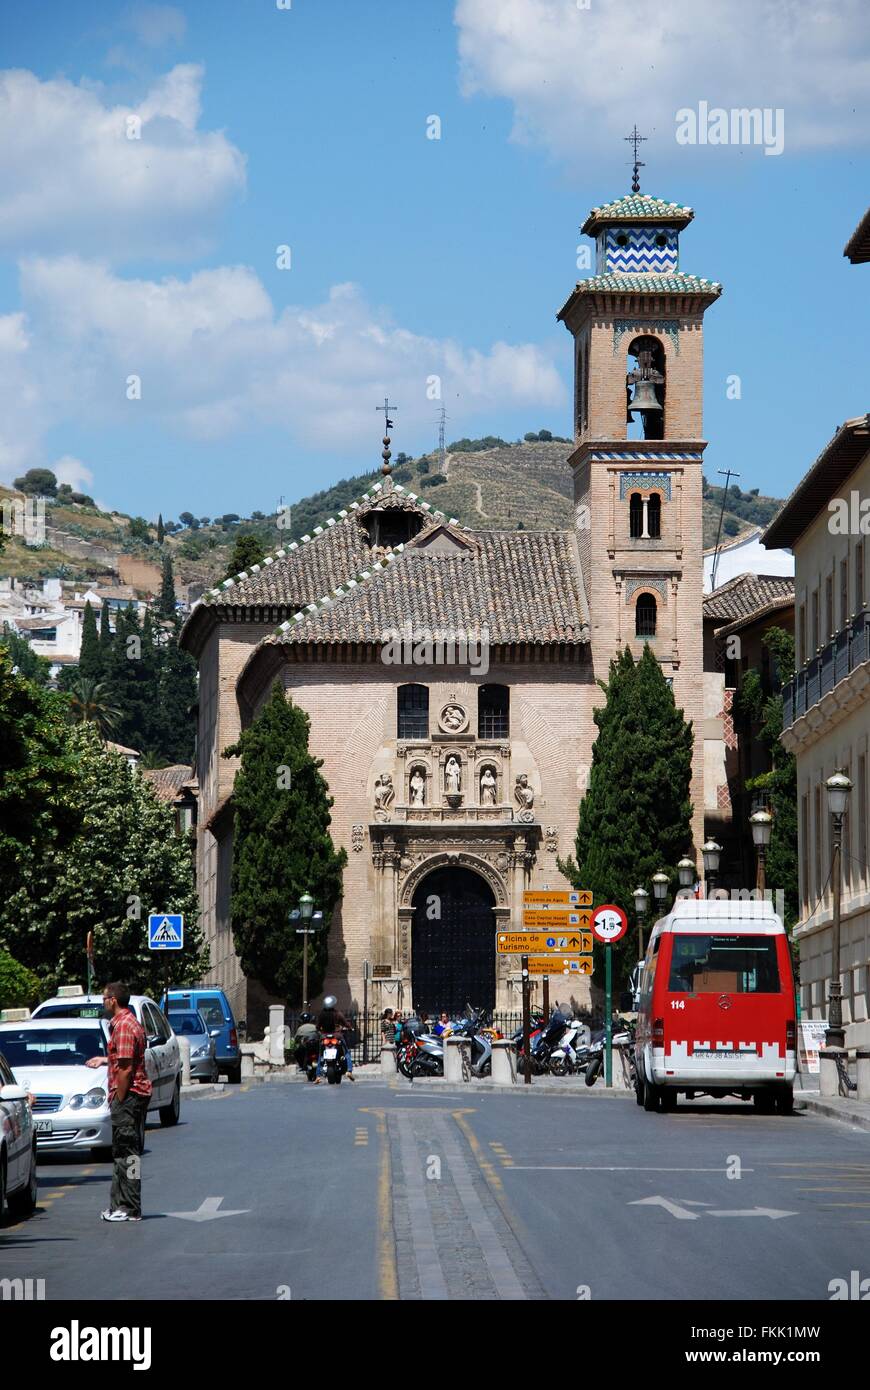 Santa Ana church in the La Plaza Nueva off the Carrera del Darro in the Albaicin, Granada, Granada Province, Andalusia, Spain. Stock Photo